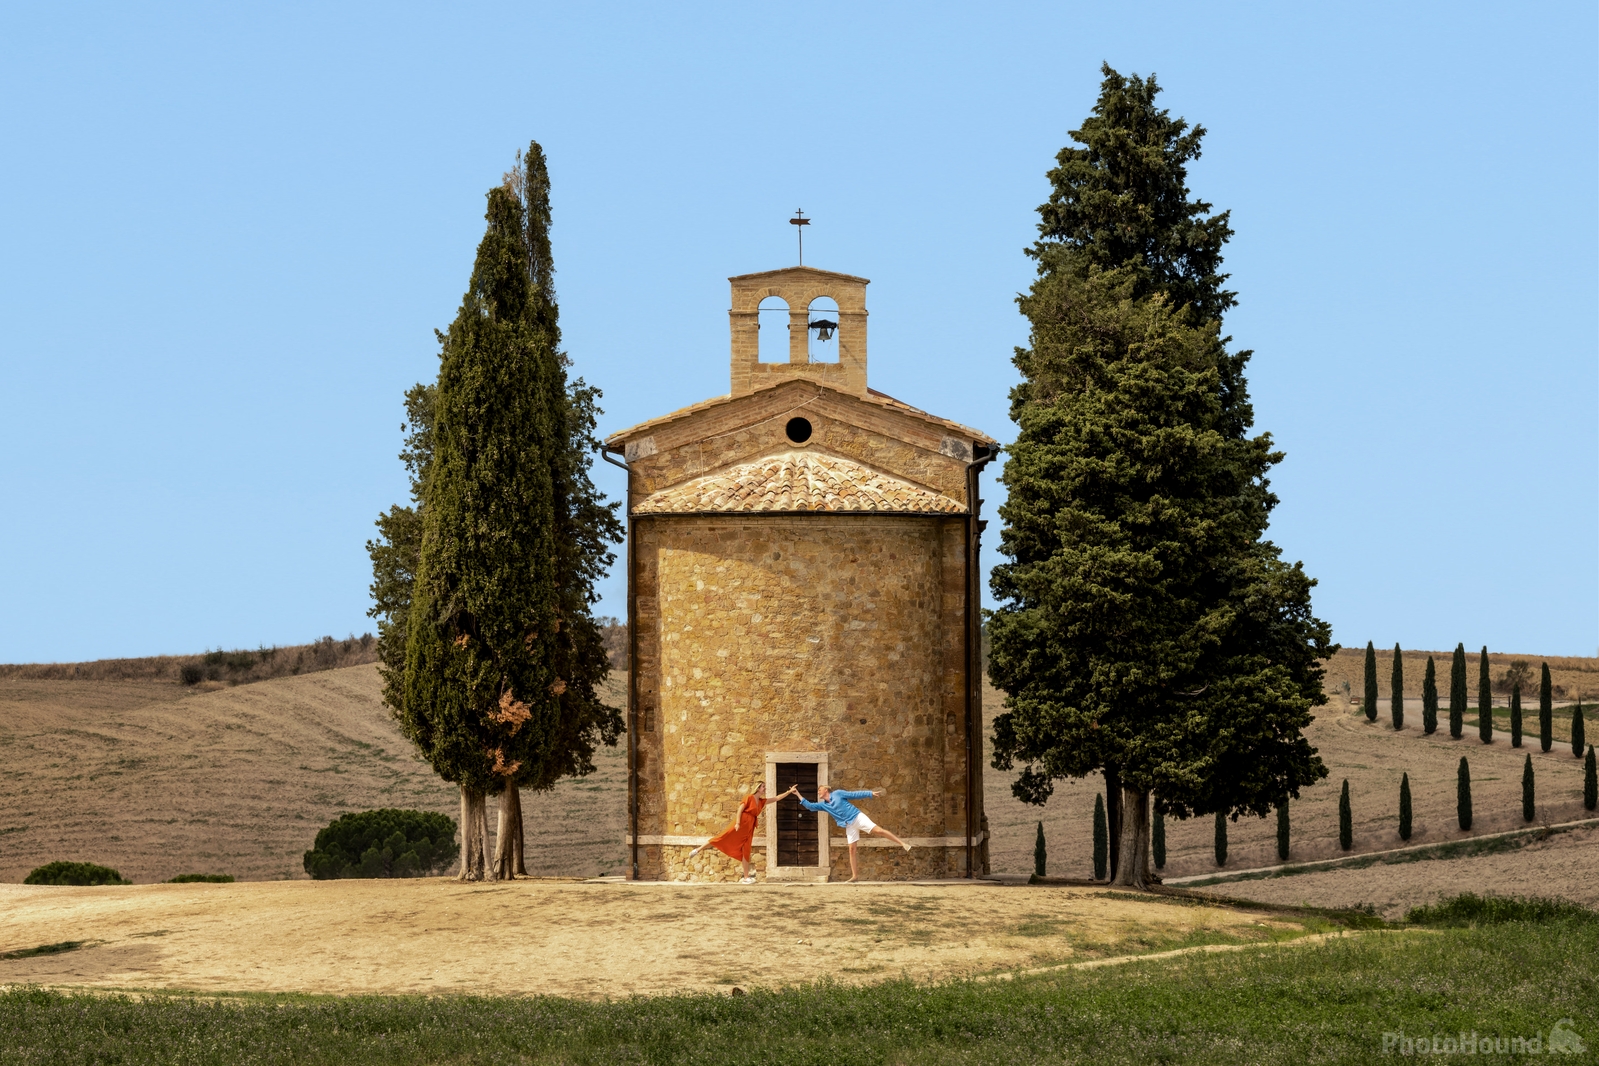 Image of Cappella Madonna di Vitaleta (Chapel ) by Alexandra Sharrock